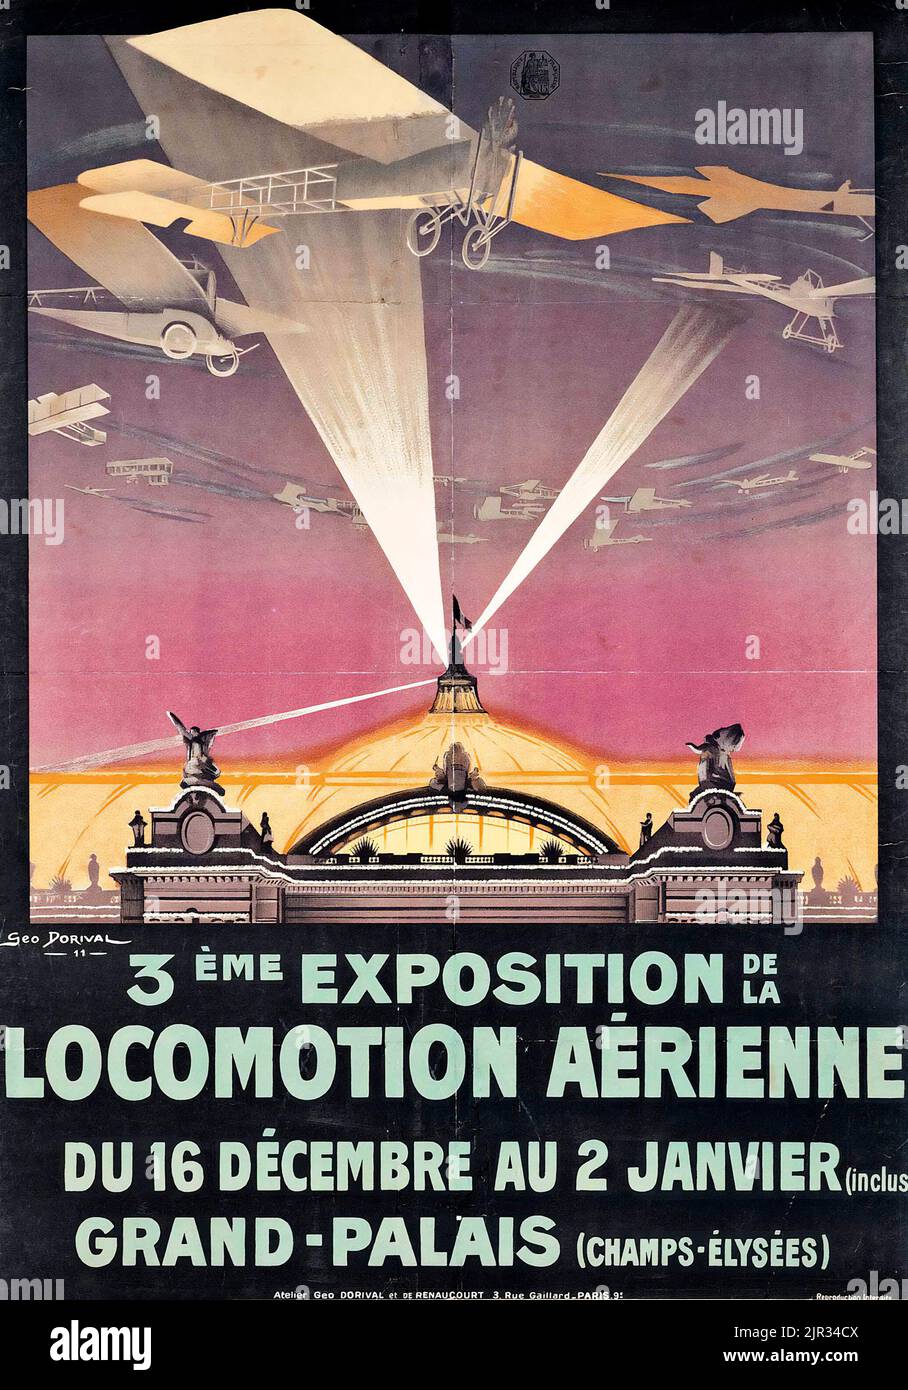 Georges S. Dorival Artwork - 3ME EXPOSITION DE LA LOCOMOTION ARIENNE - affiche de voyage vintage. Banque D'Images